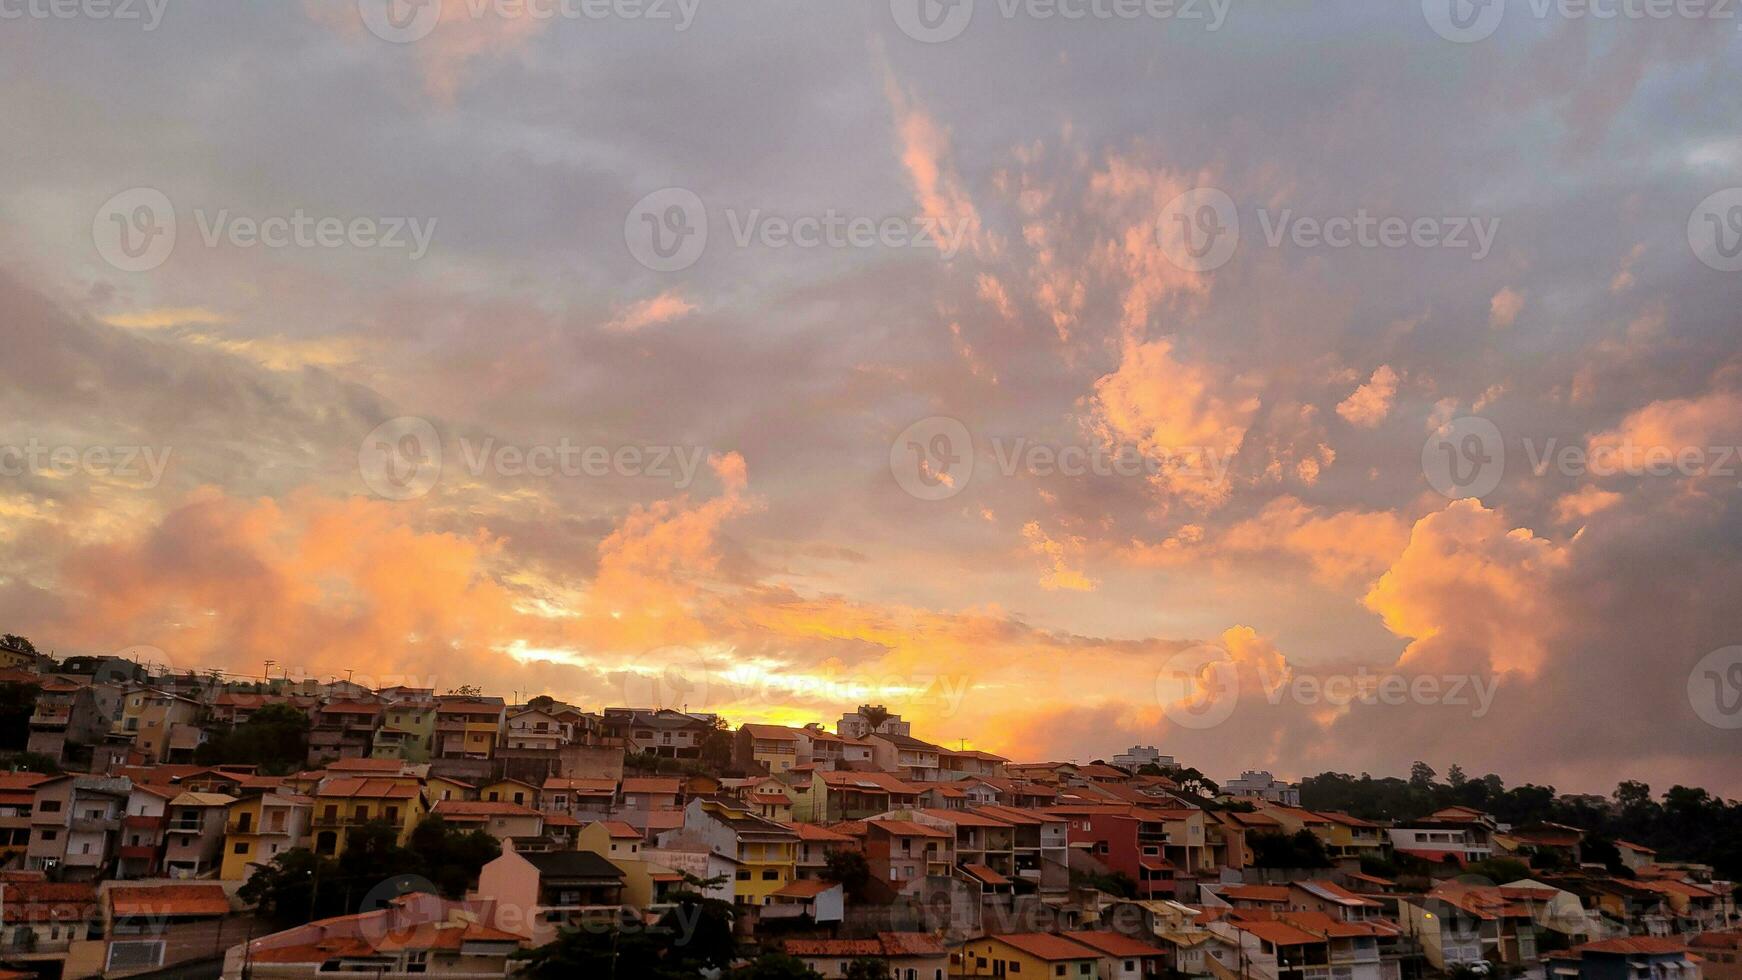 solnedgång bakgrund på sen eftermiddag i Brasilien foto